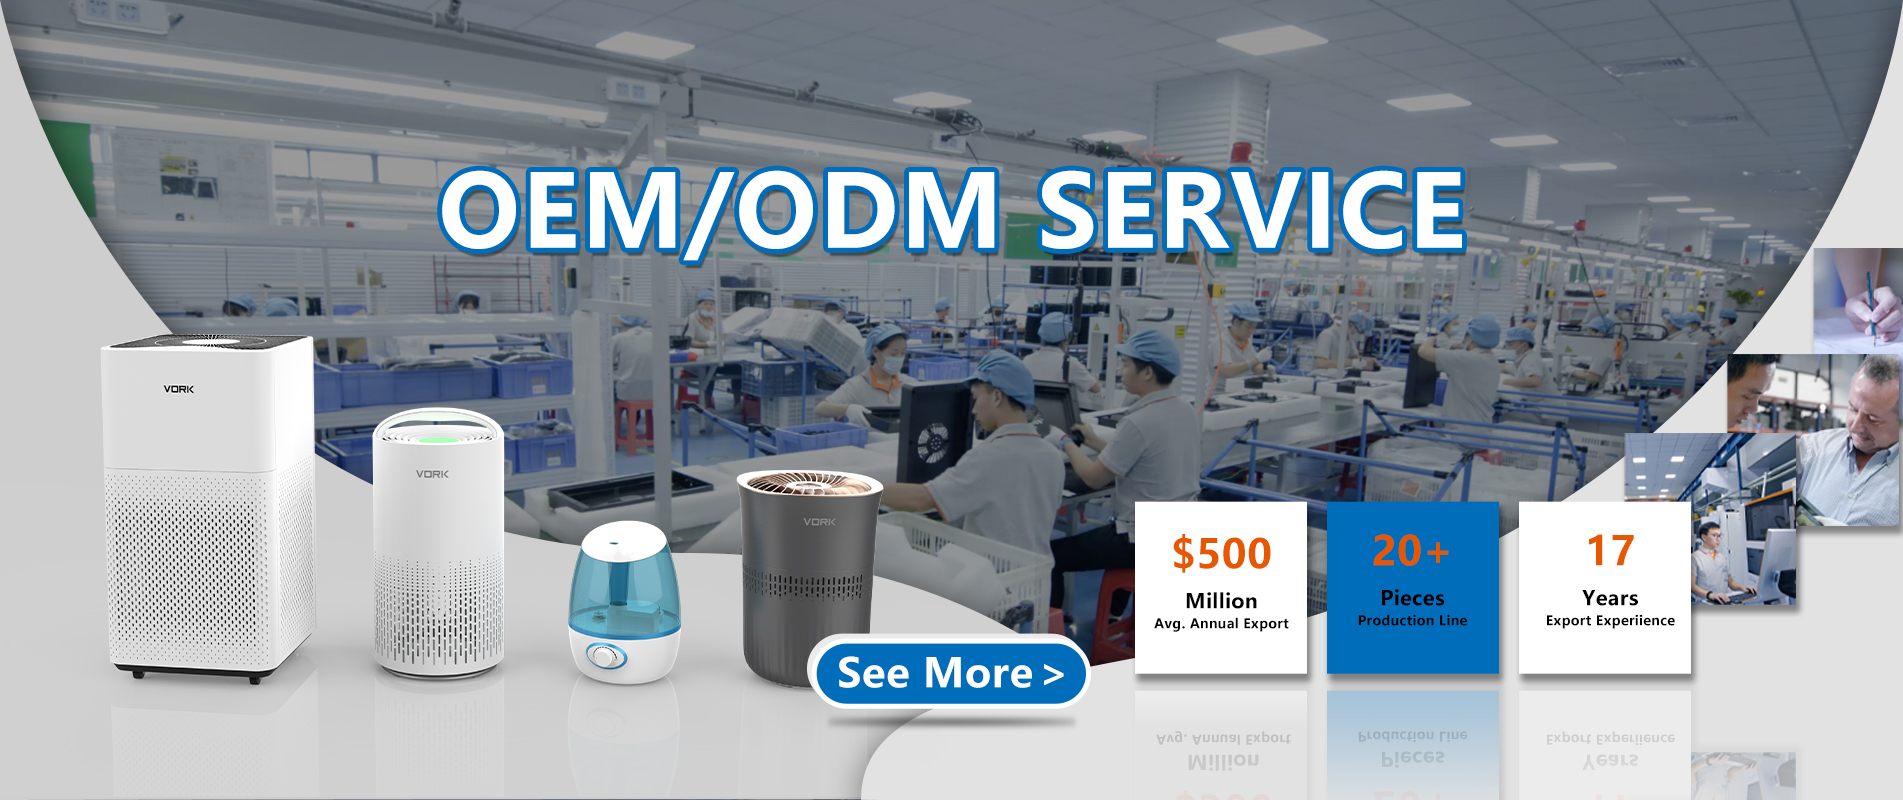 OEM/ODM-Service